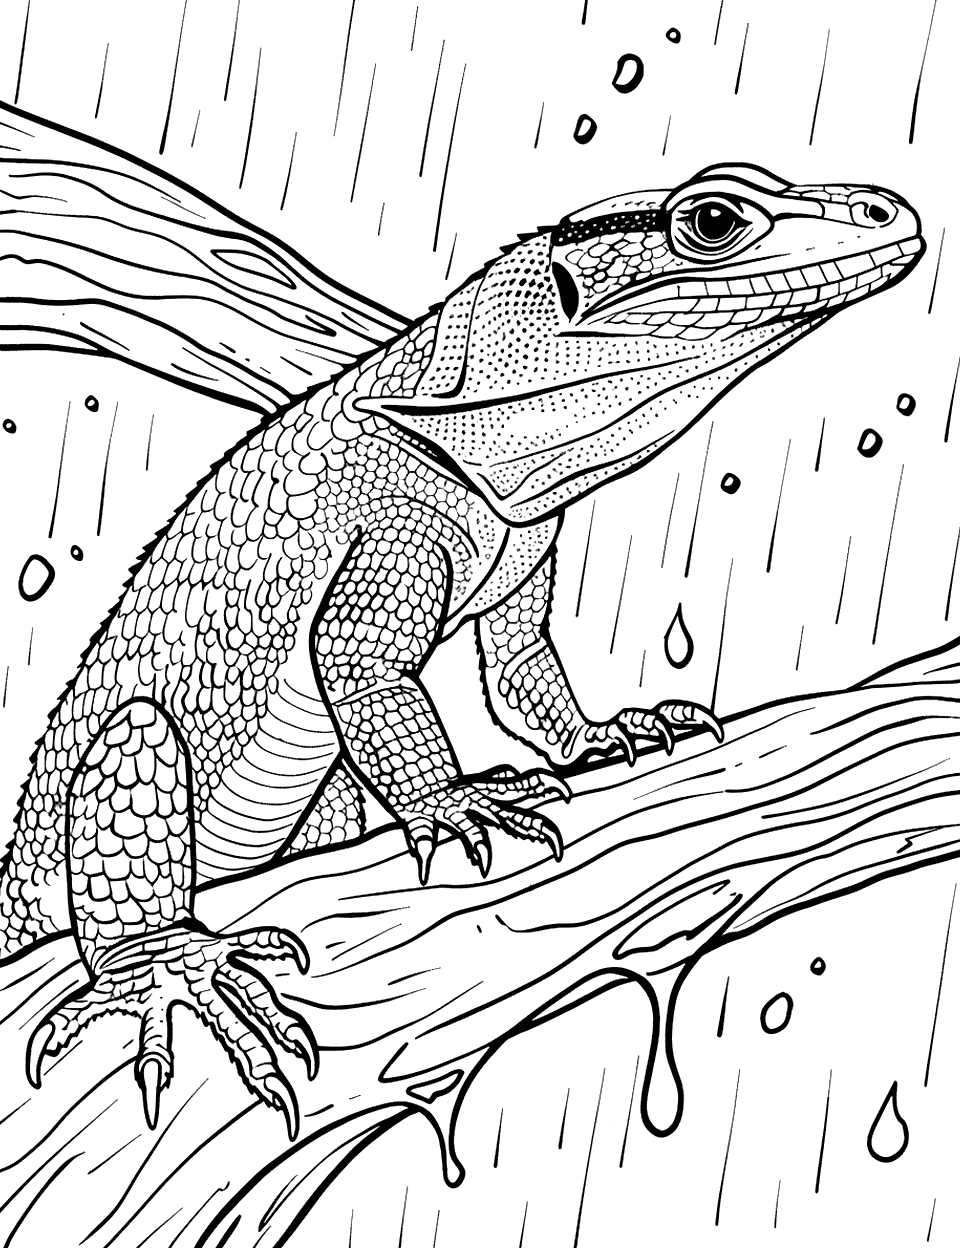 Monitor Lizard Enjoying Rain Coloring Page - A monitor lizard enjoying a refreshing shower.